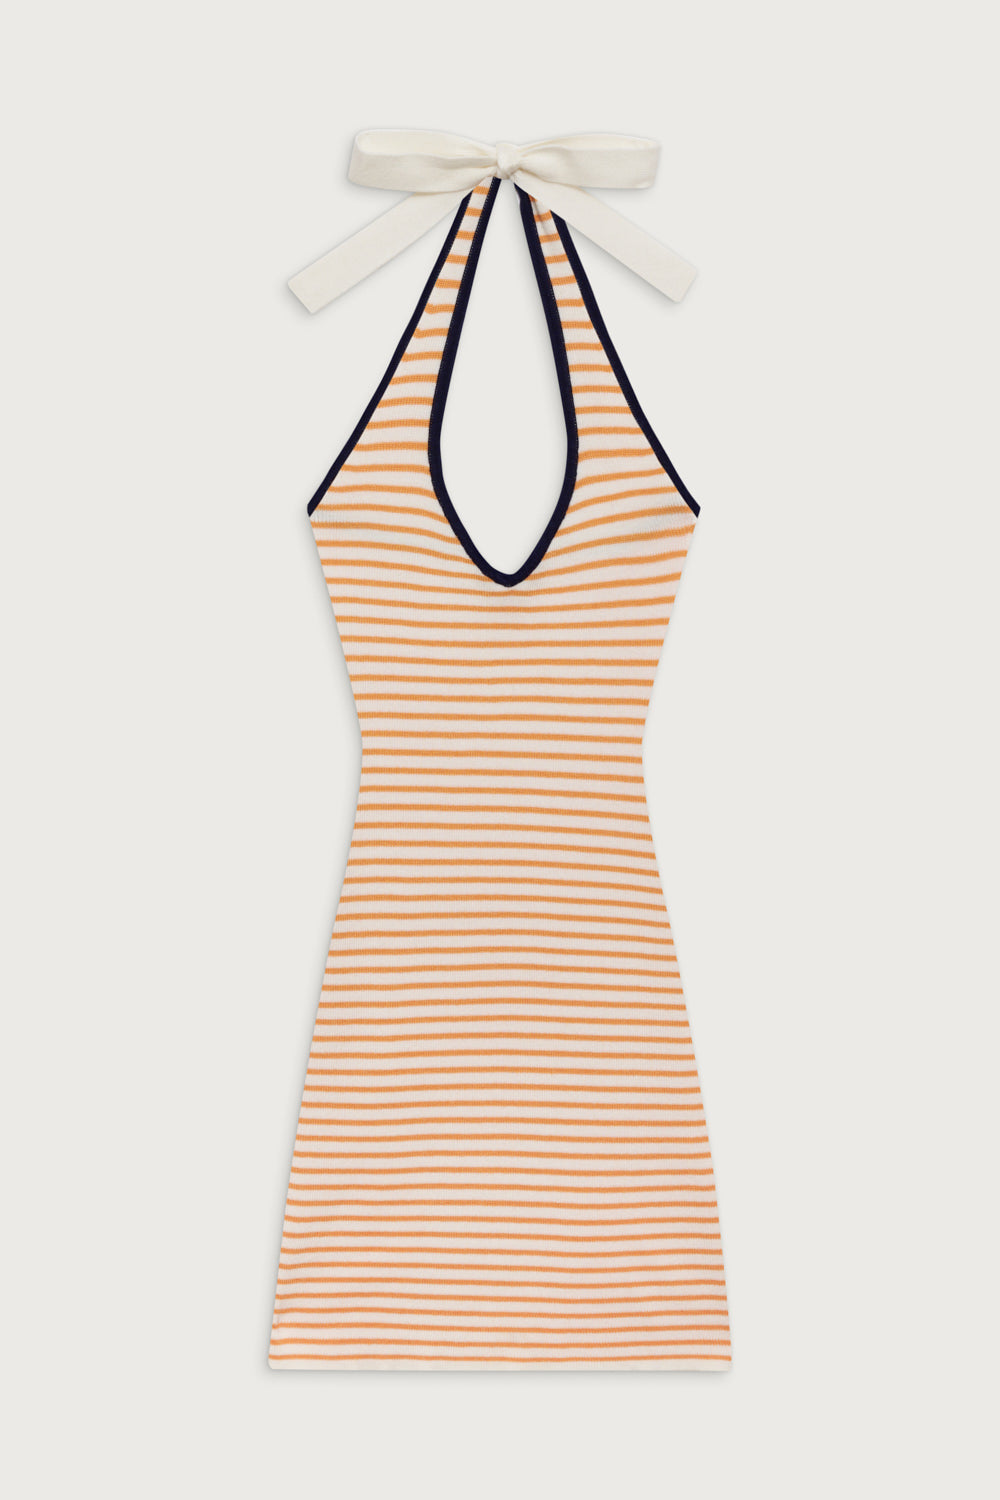 Dolly Knit Mini Dress - Sunset Stripe